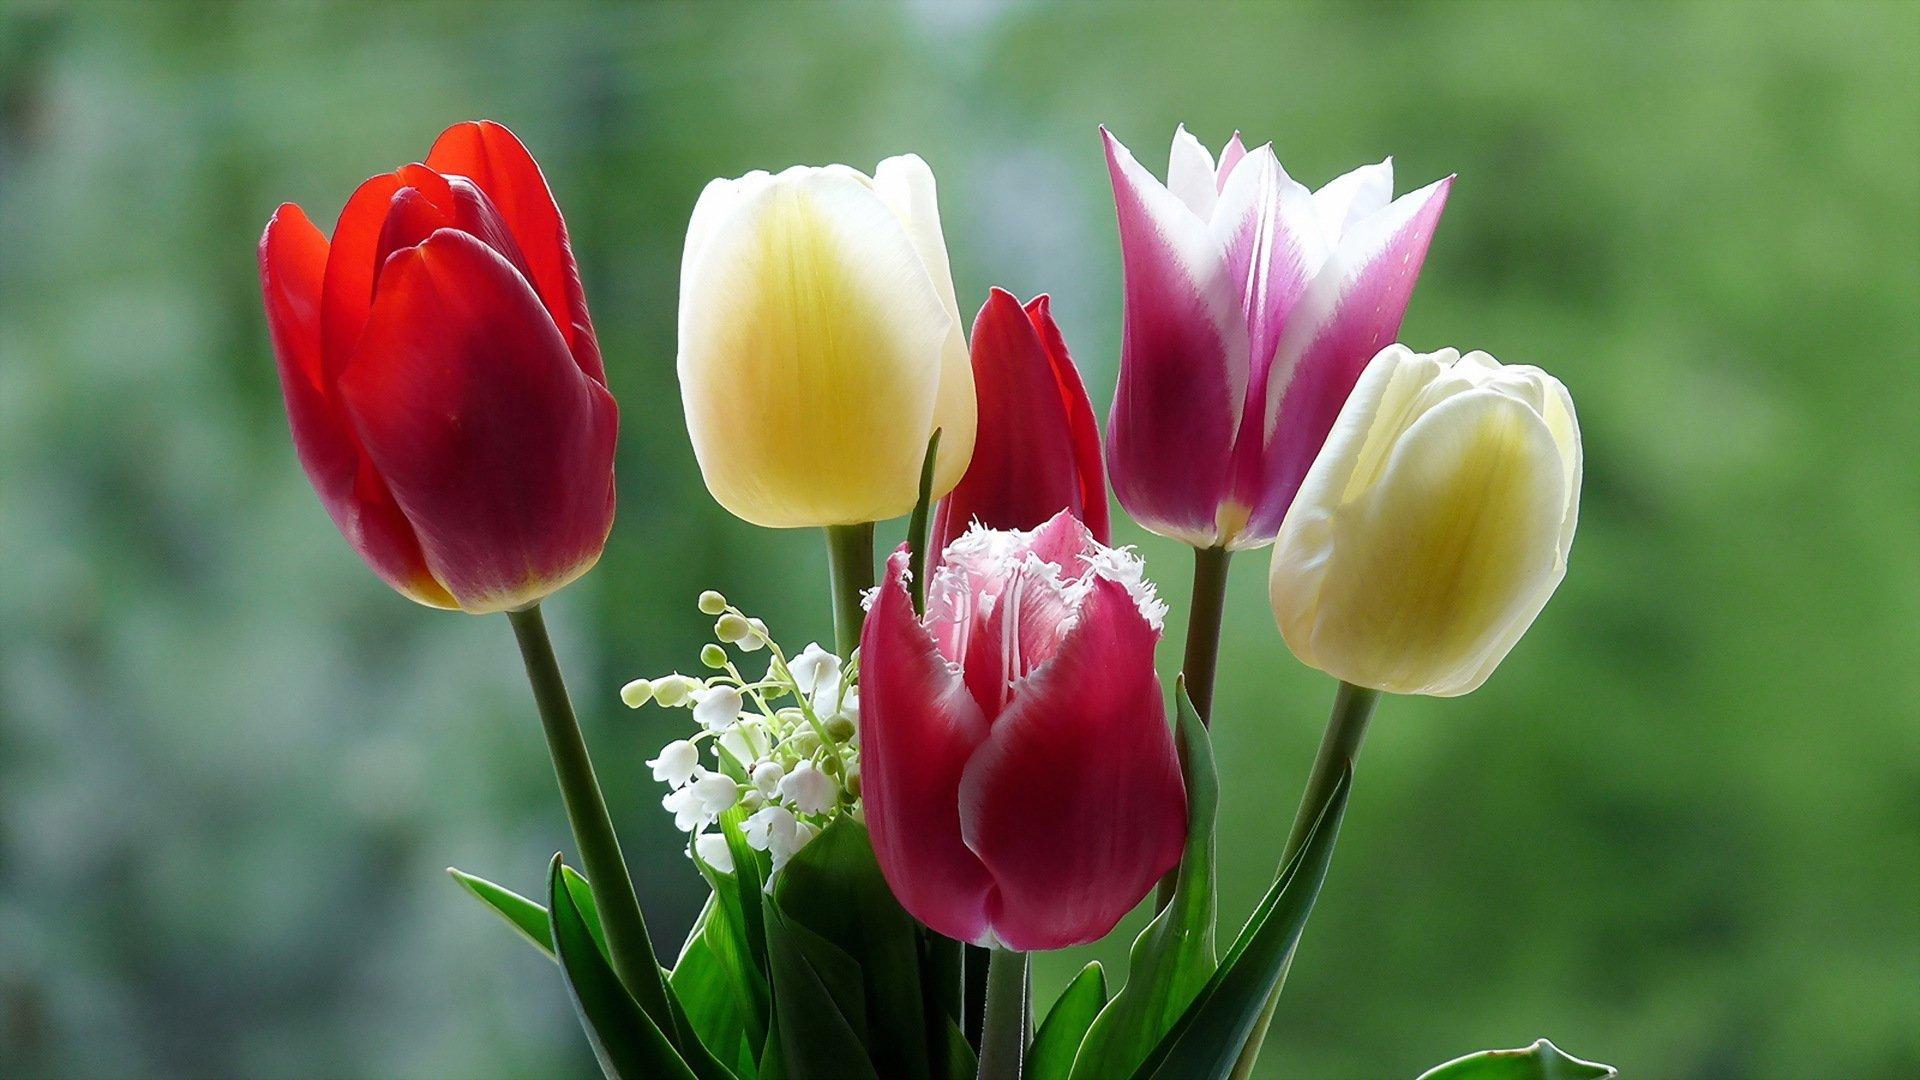 тюльпаны в полном цвету потрясающий весенний фон для веб баннеров и  дизайнов открыток Фото Фон И картинка для бесплатной загрузки - Pngtree